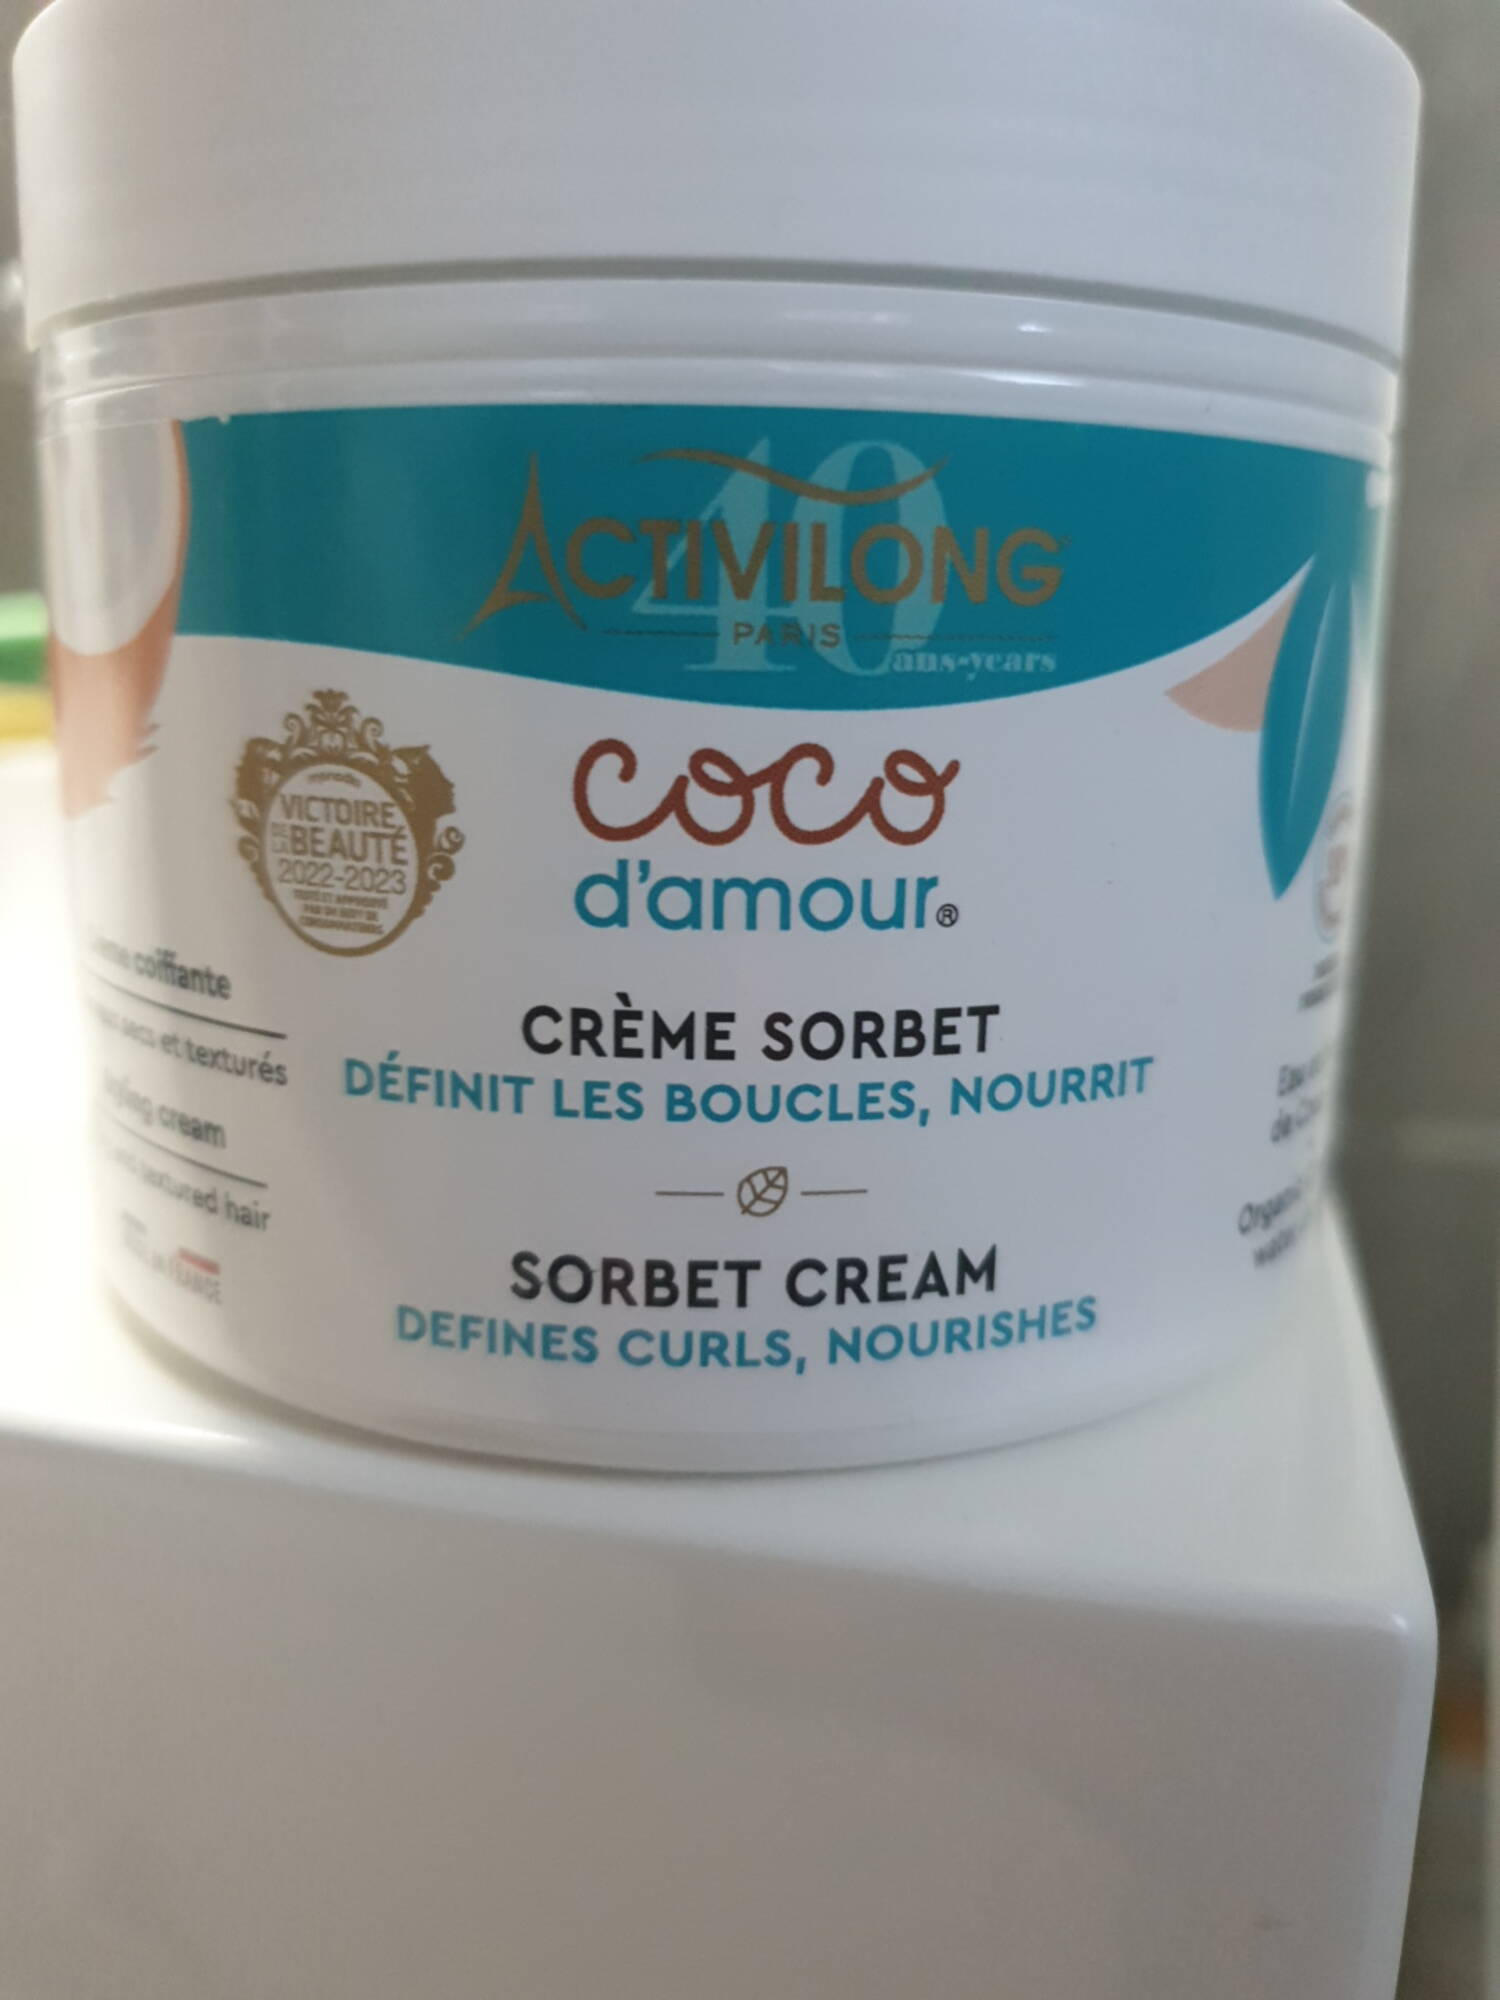 ACTIVILONG - Coco d'amour - Crème sorbet